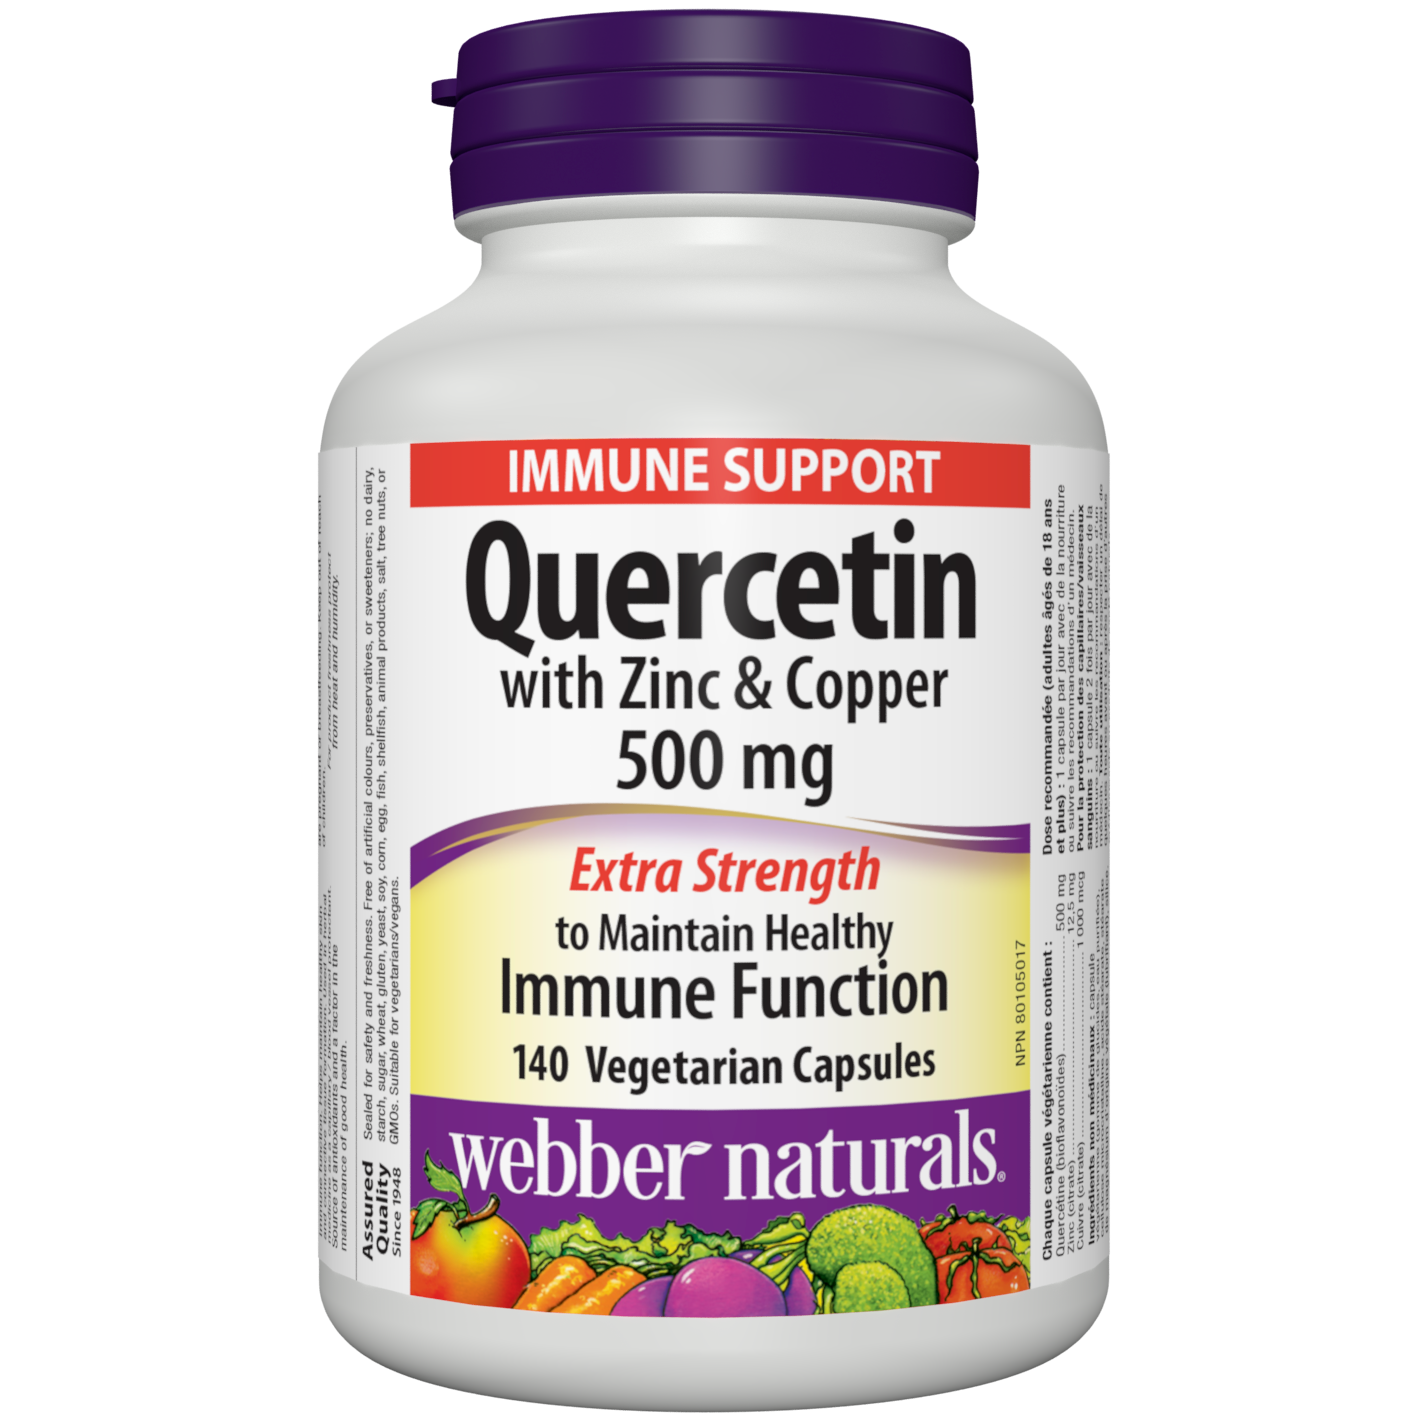 Quercetin with Zinc & Copper 500 mg Vegetarian Capsules for Webber Naturals|v|hi-res|WN5275